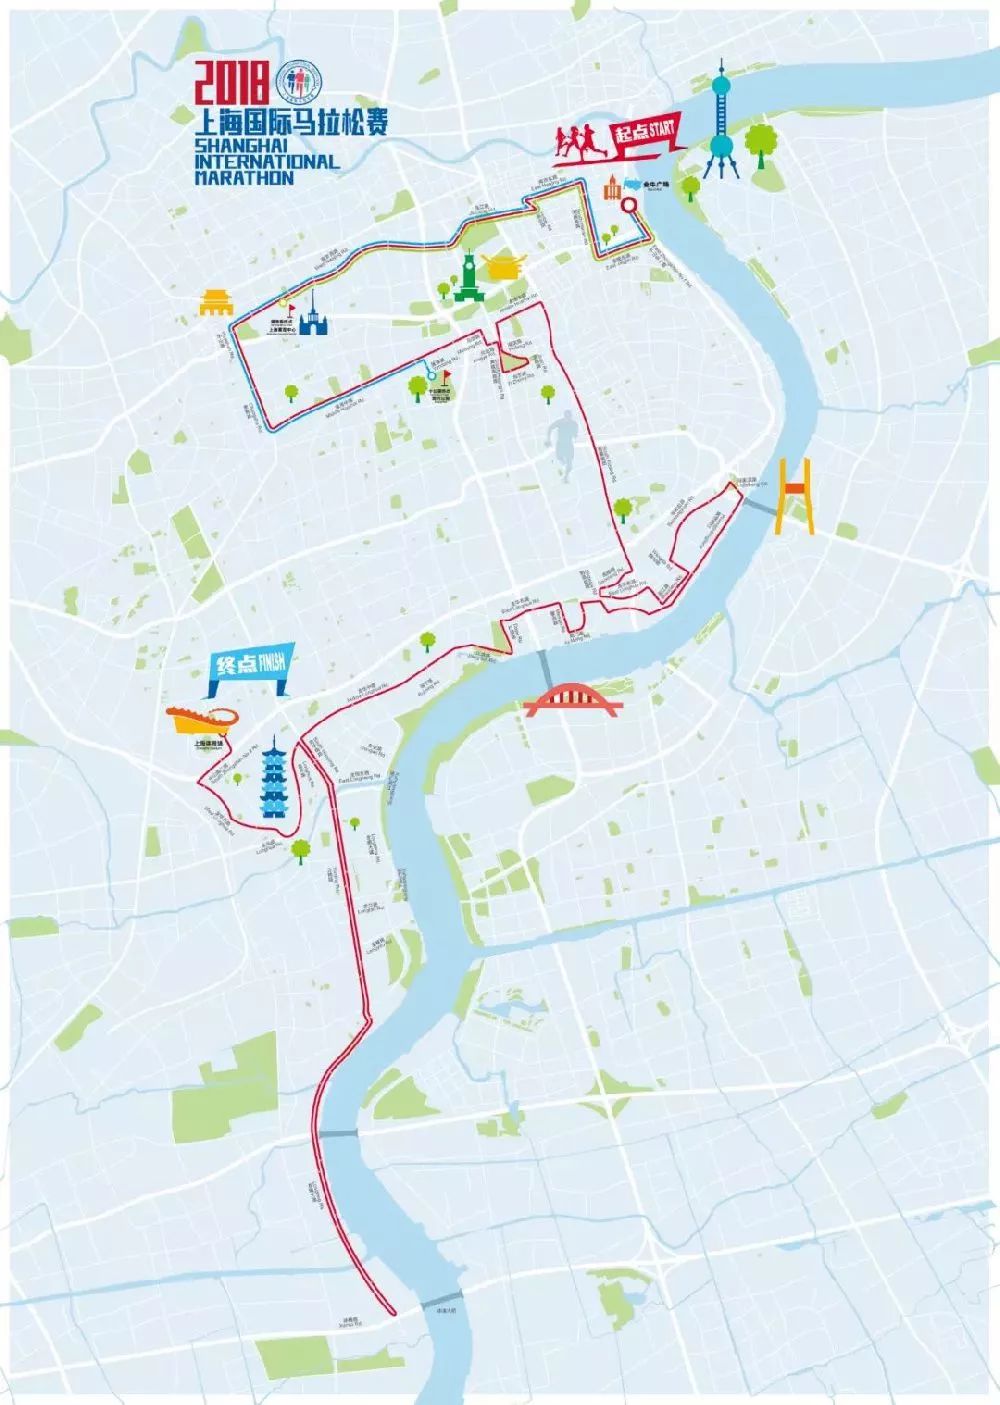 11月18日上海马拉松开跑 这些路段临时交通管制限行